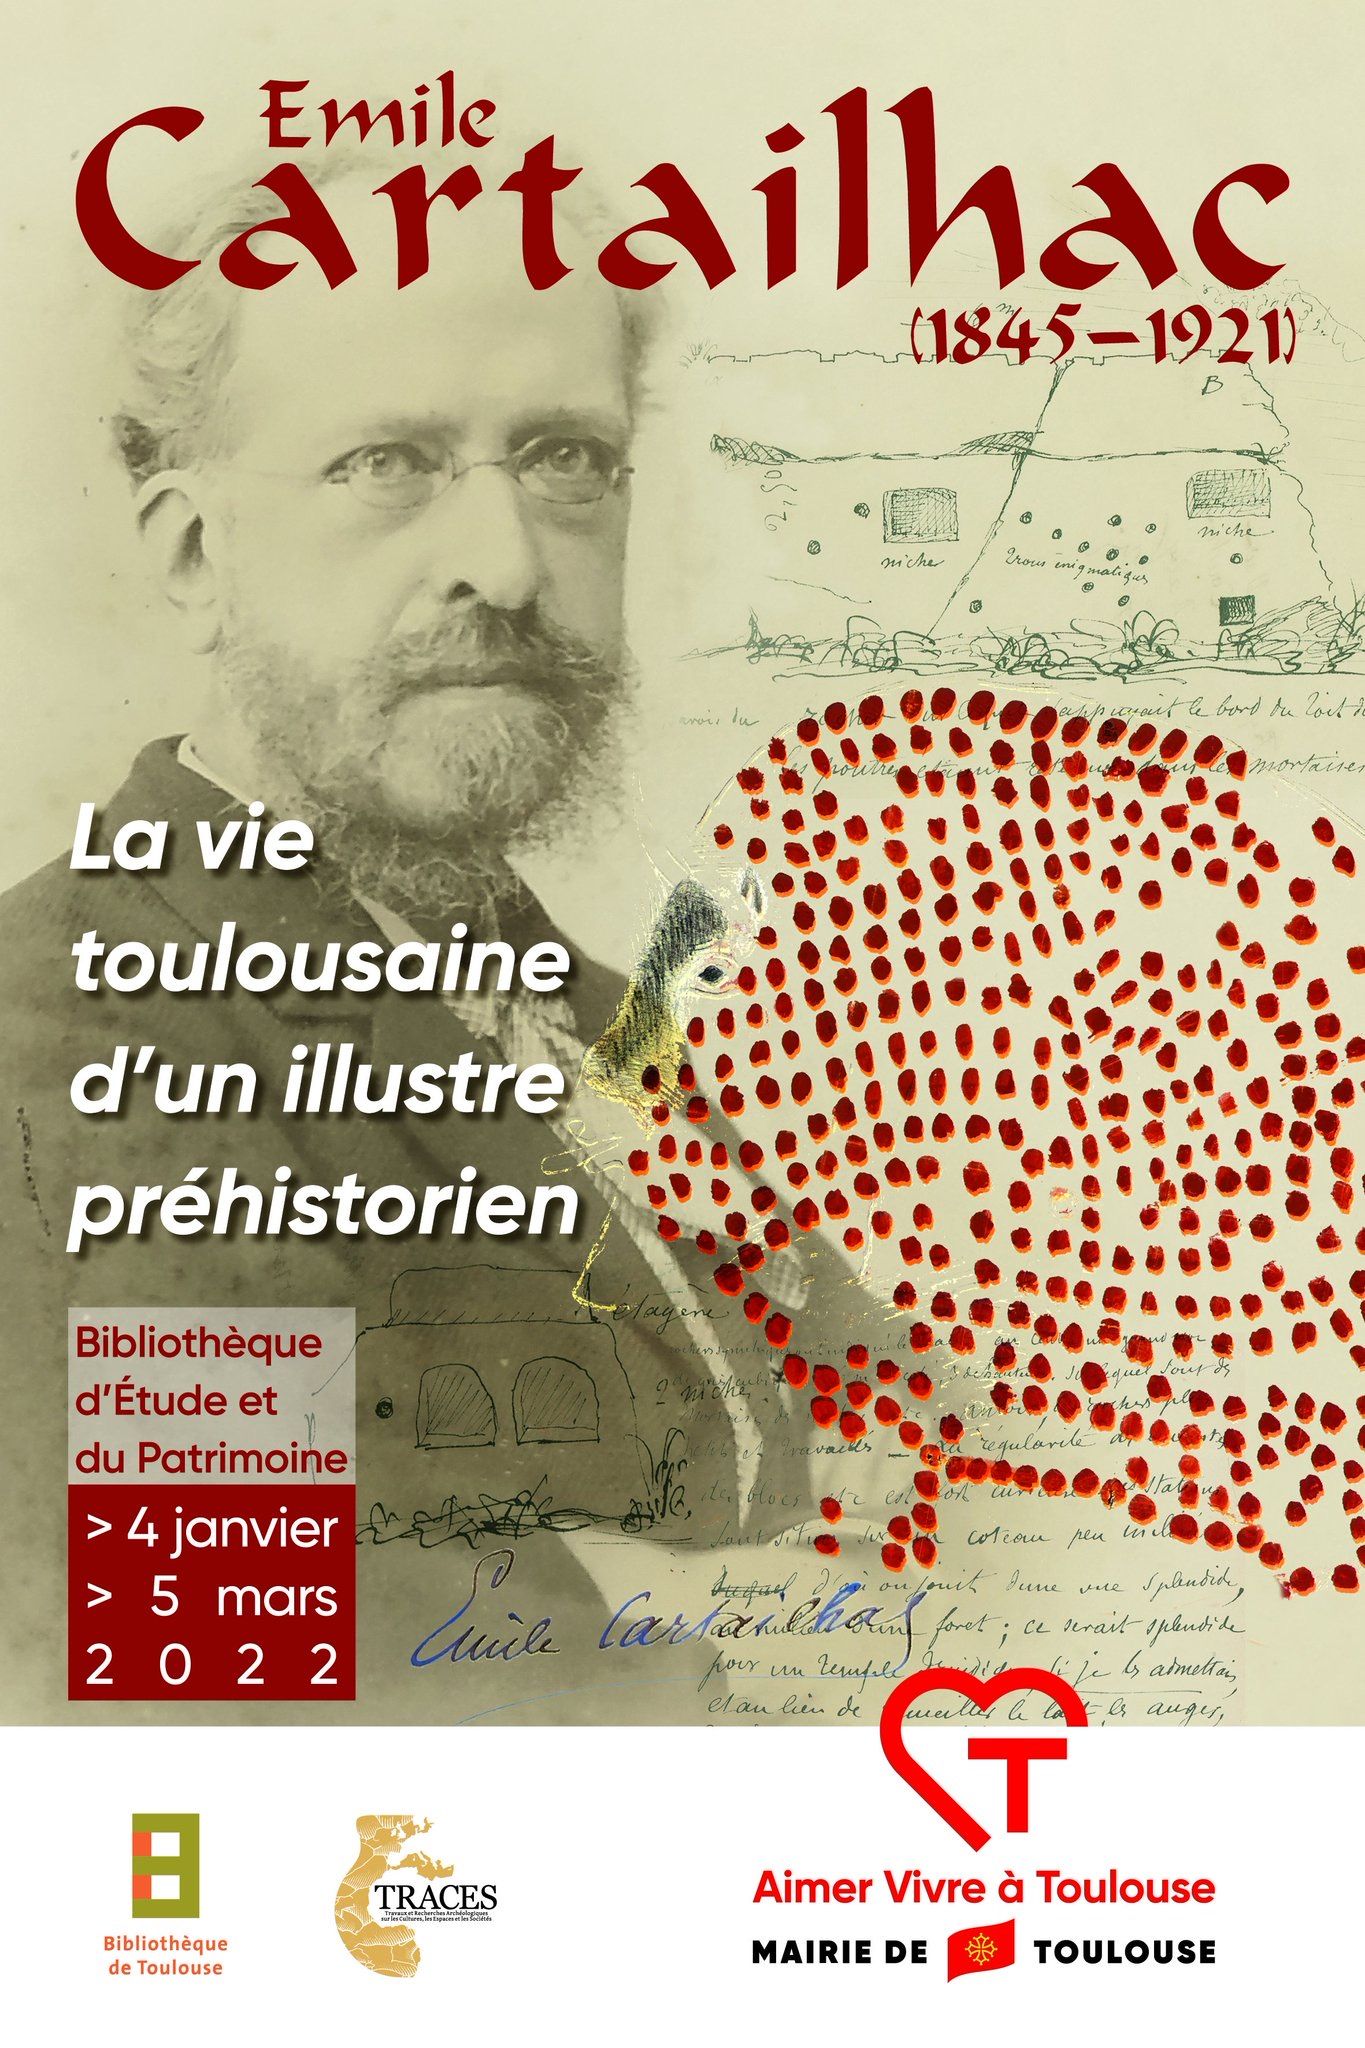 Bibliothèque d'Étude et du Patrimoine - Emile Cartailhac